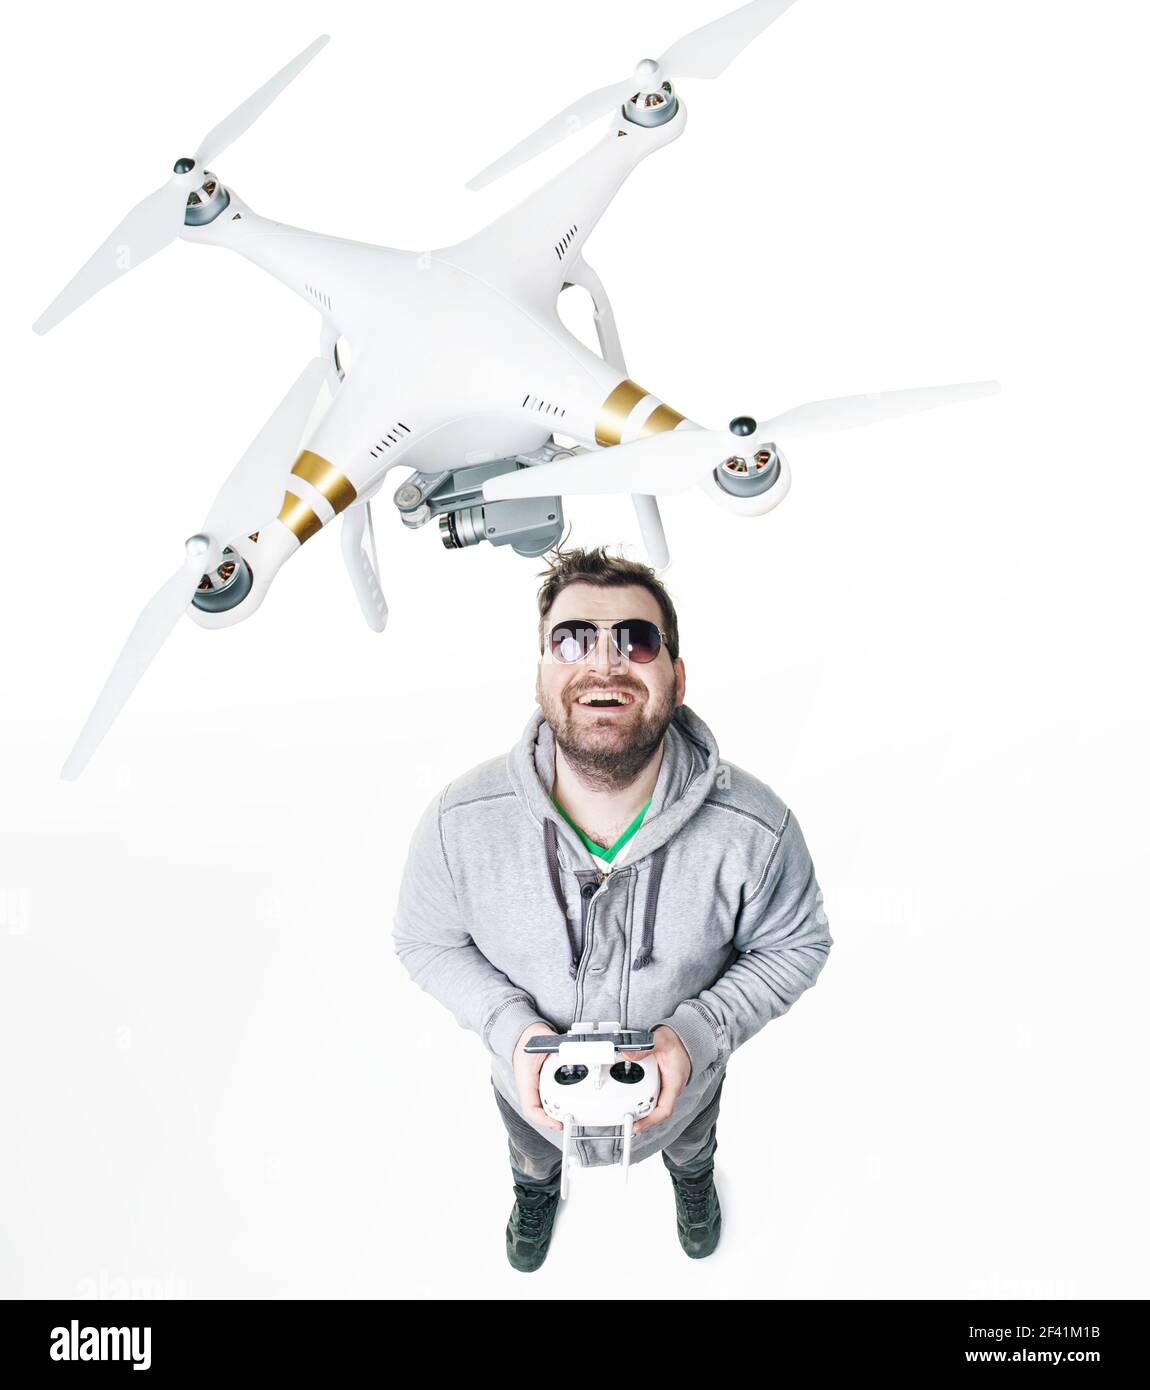 Jeune homme jouant un avion jouet blanc Banque D'Images